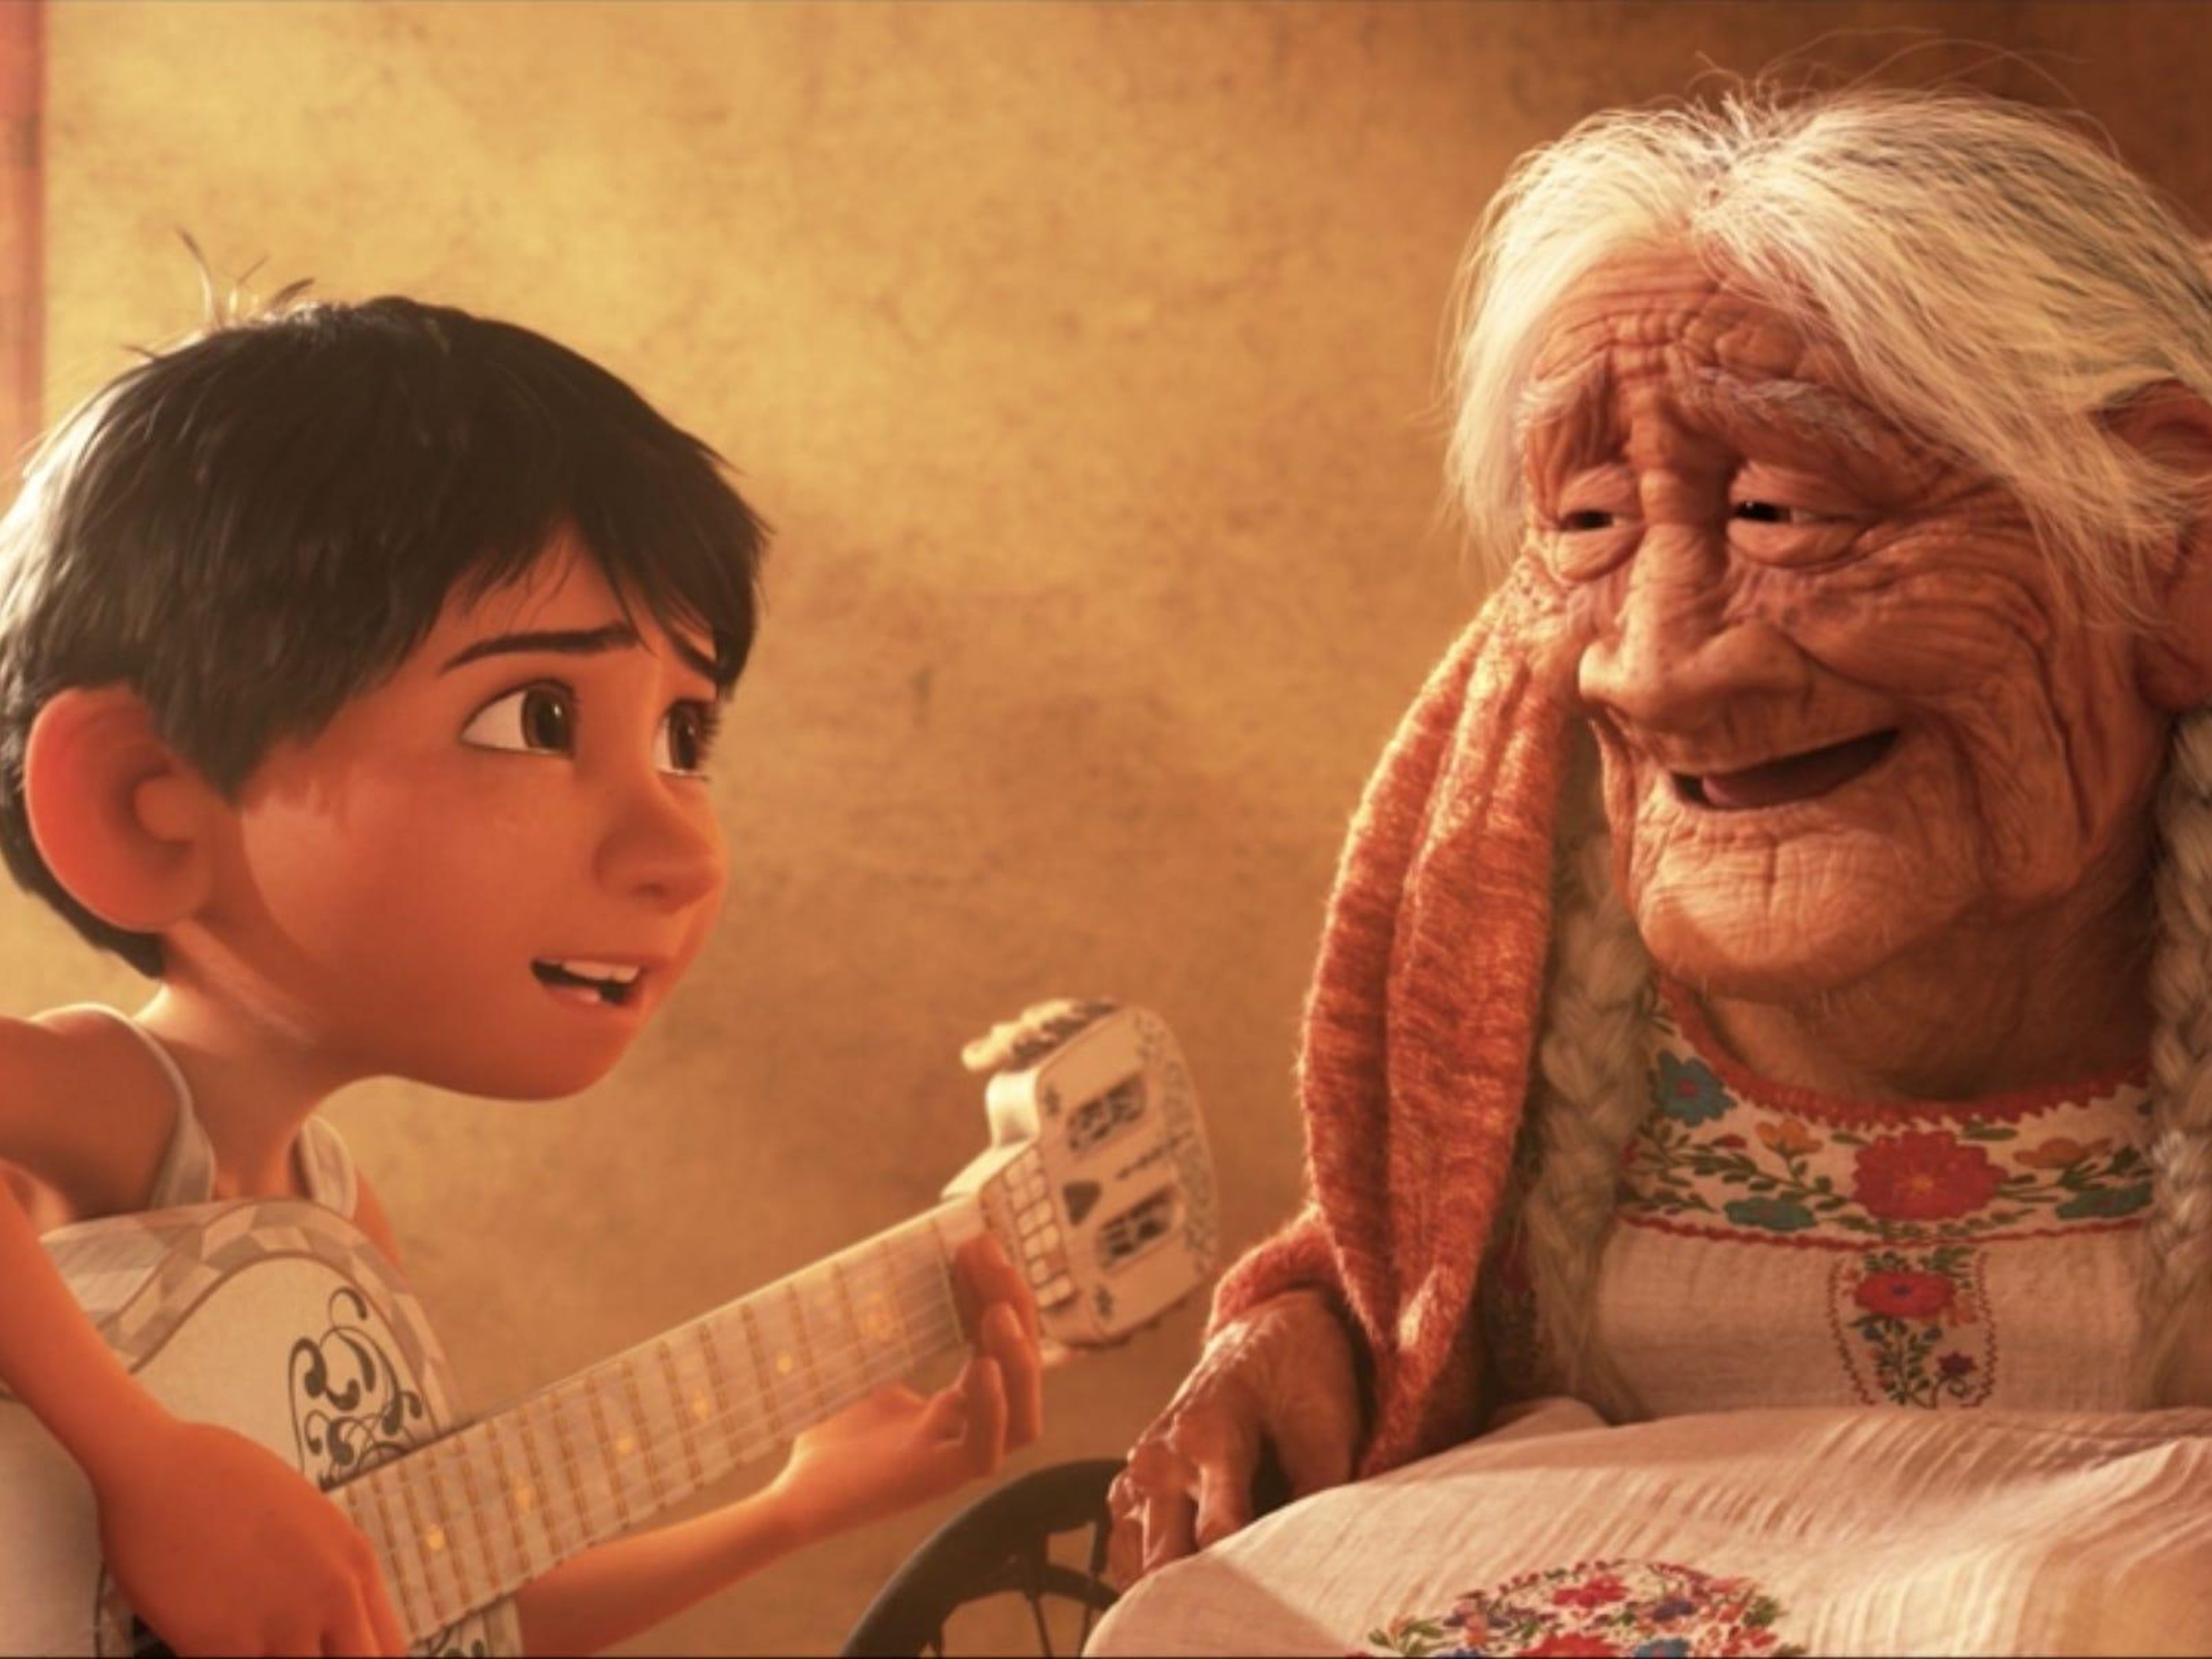 Miguel finalmente consigue que su bisabuela sonría al tocar una canción para ella.